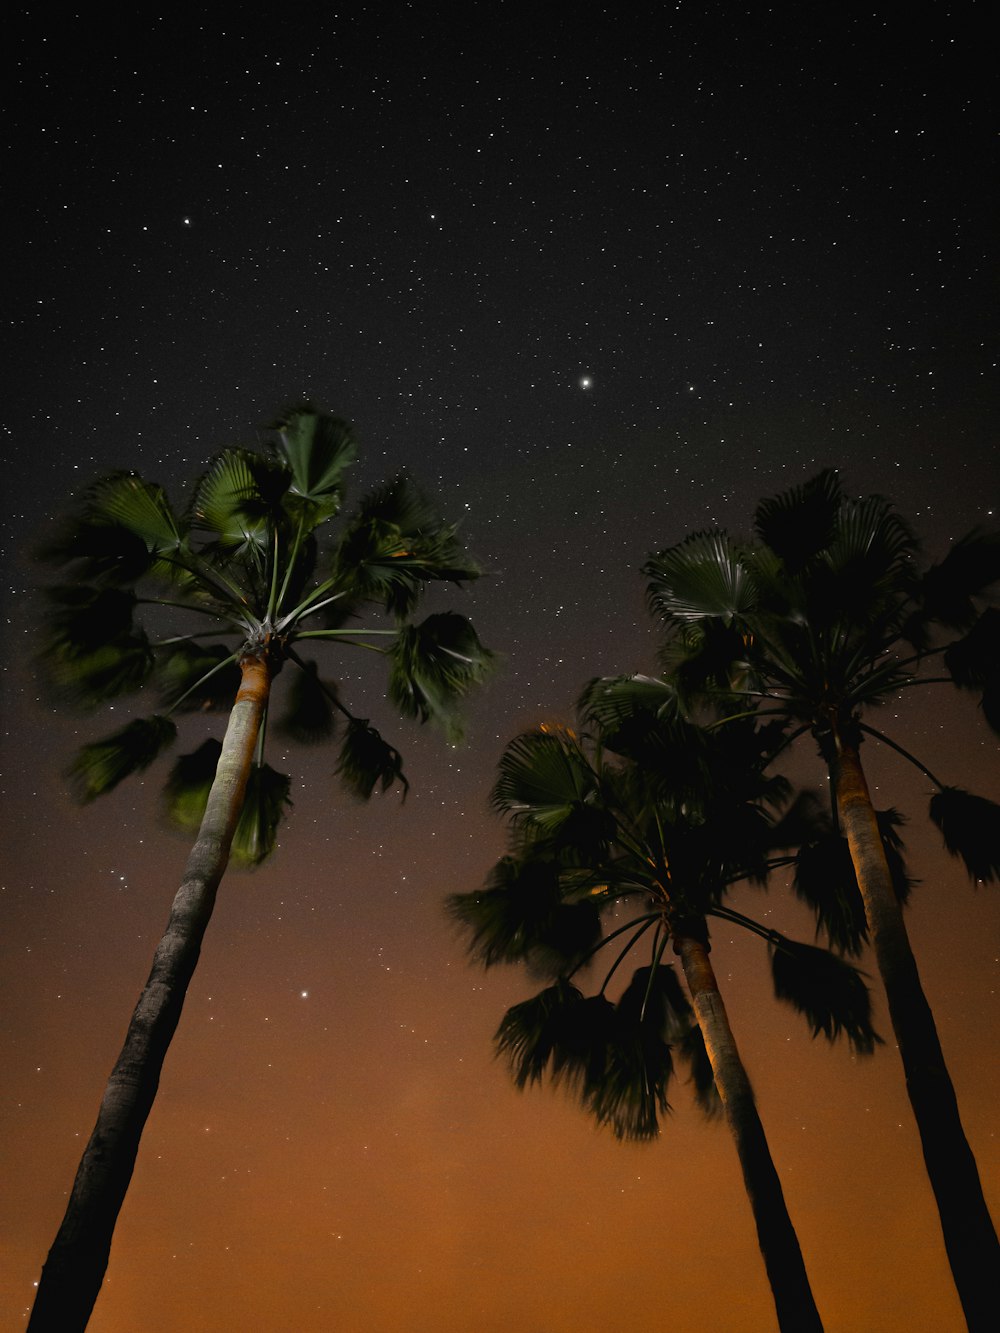 drei Kokospalmen in der Nacht